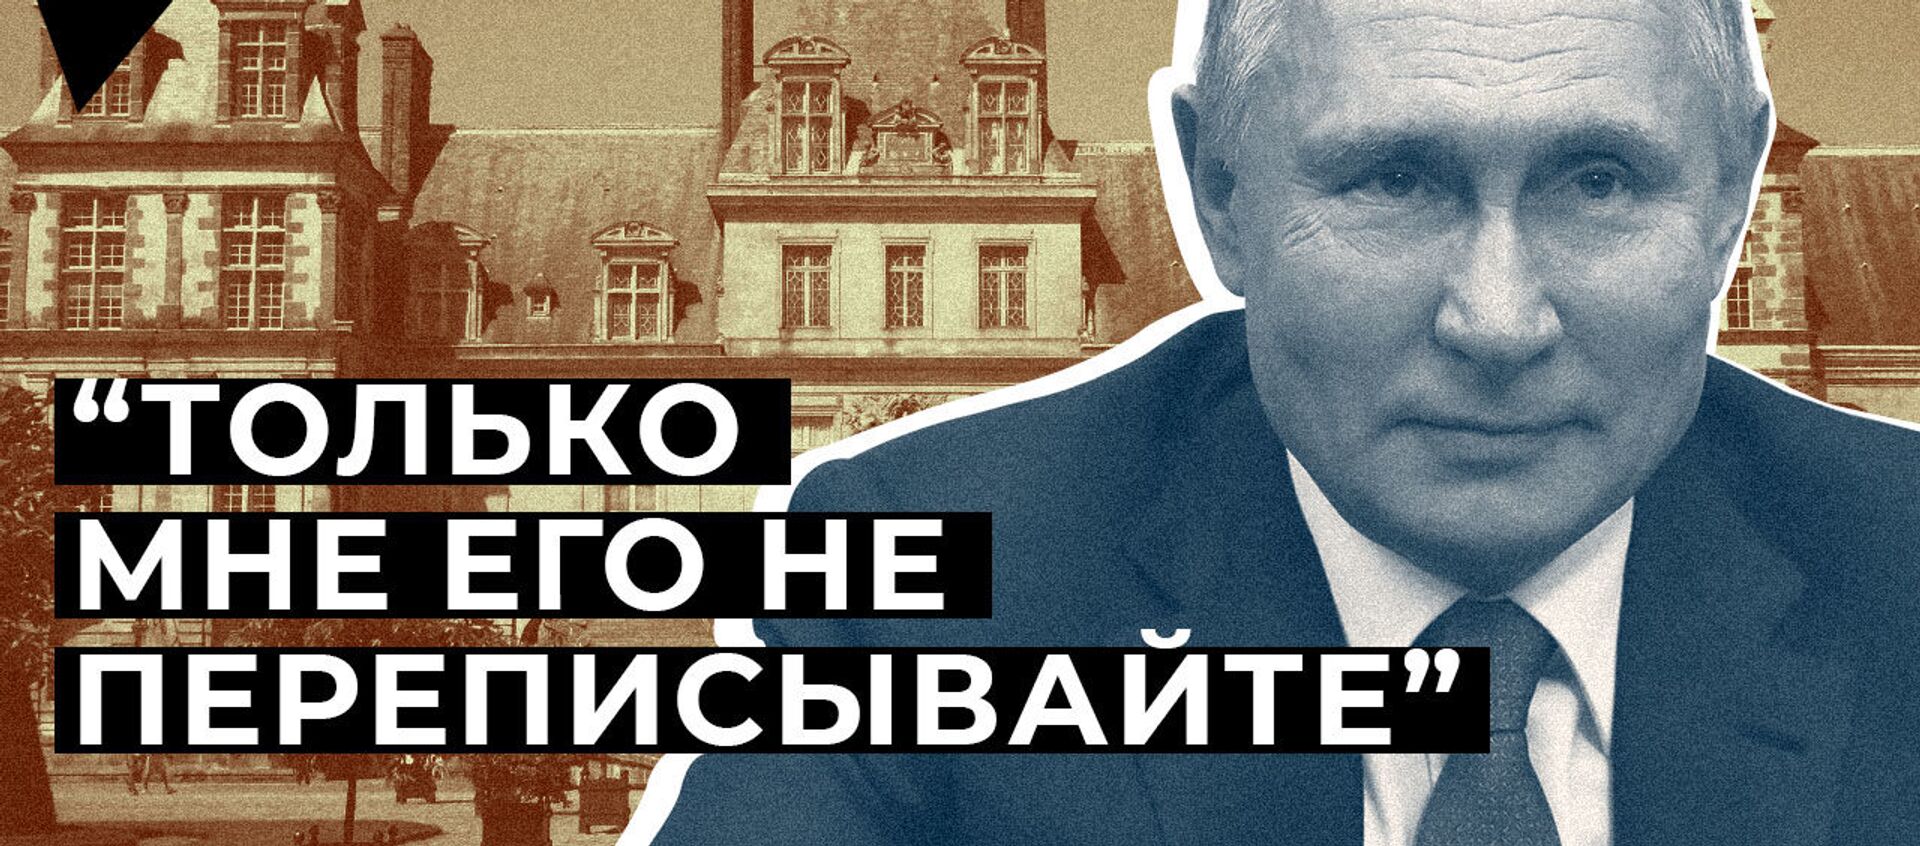 Путин пошутил про “еще один дворец” - видео - Sputnik Արմենիա, 1920, 05.03.2021